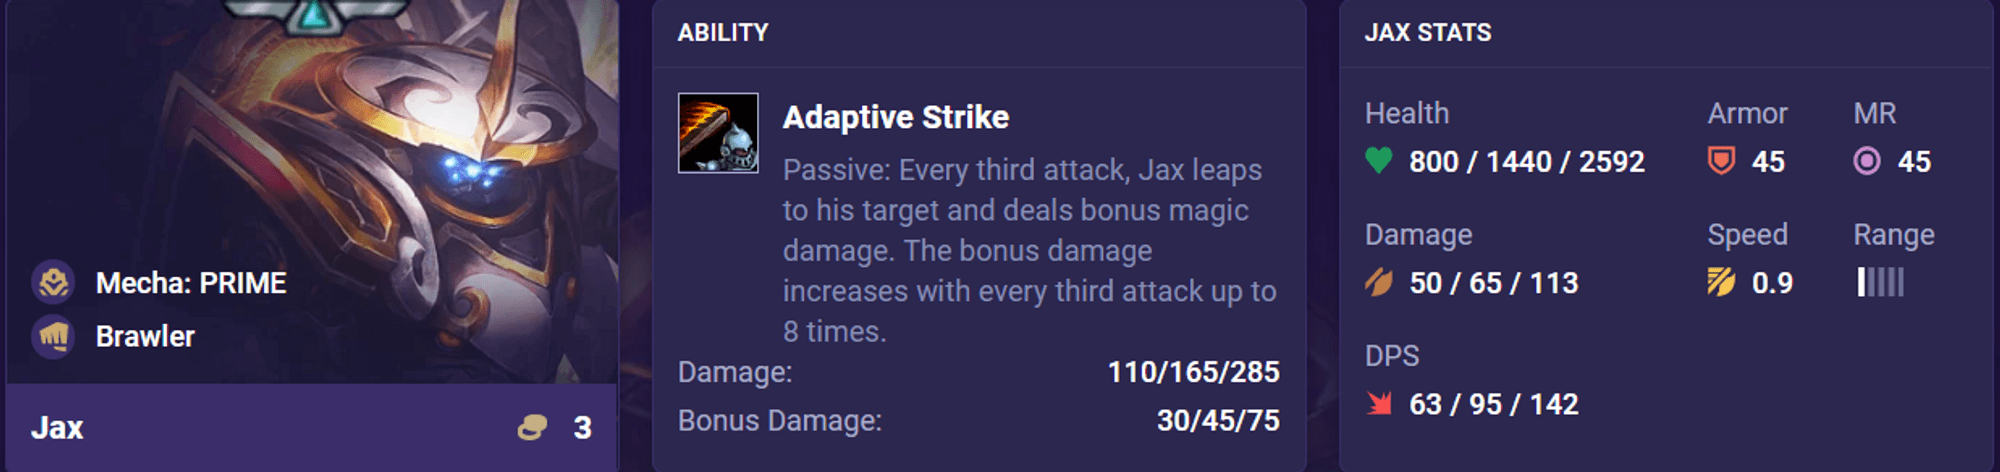 Jax với khả năng tiếp cận mục tiêu và tiến hóa sức mạnh trong trận chiến